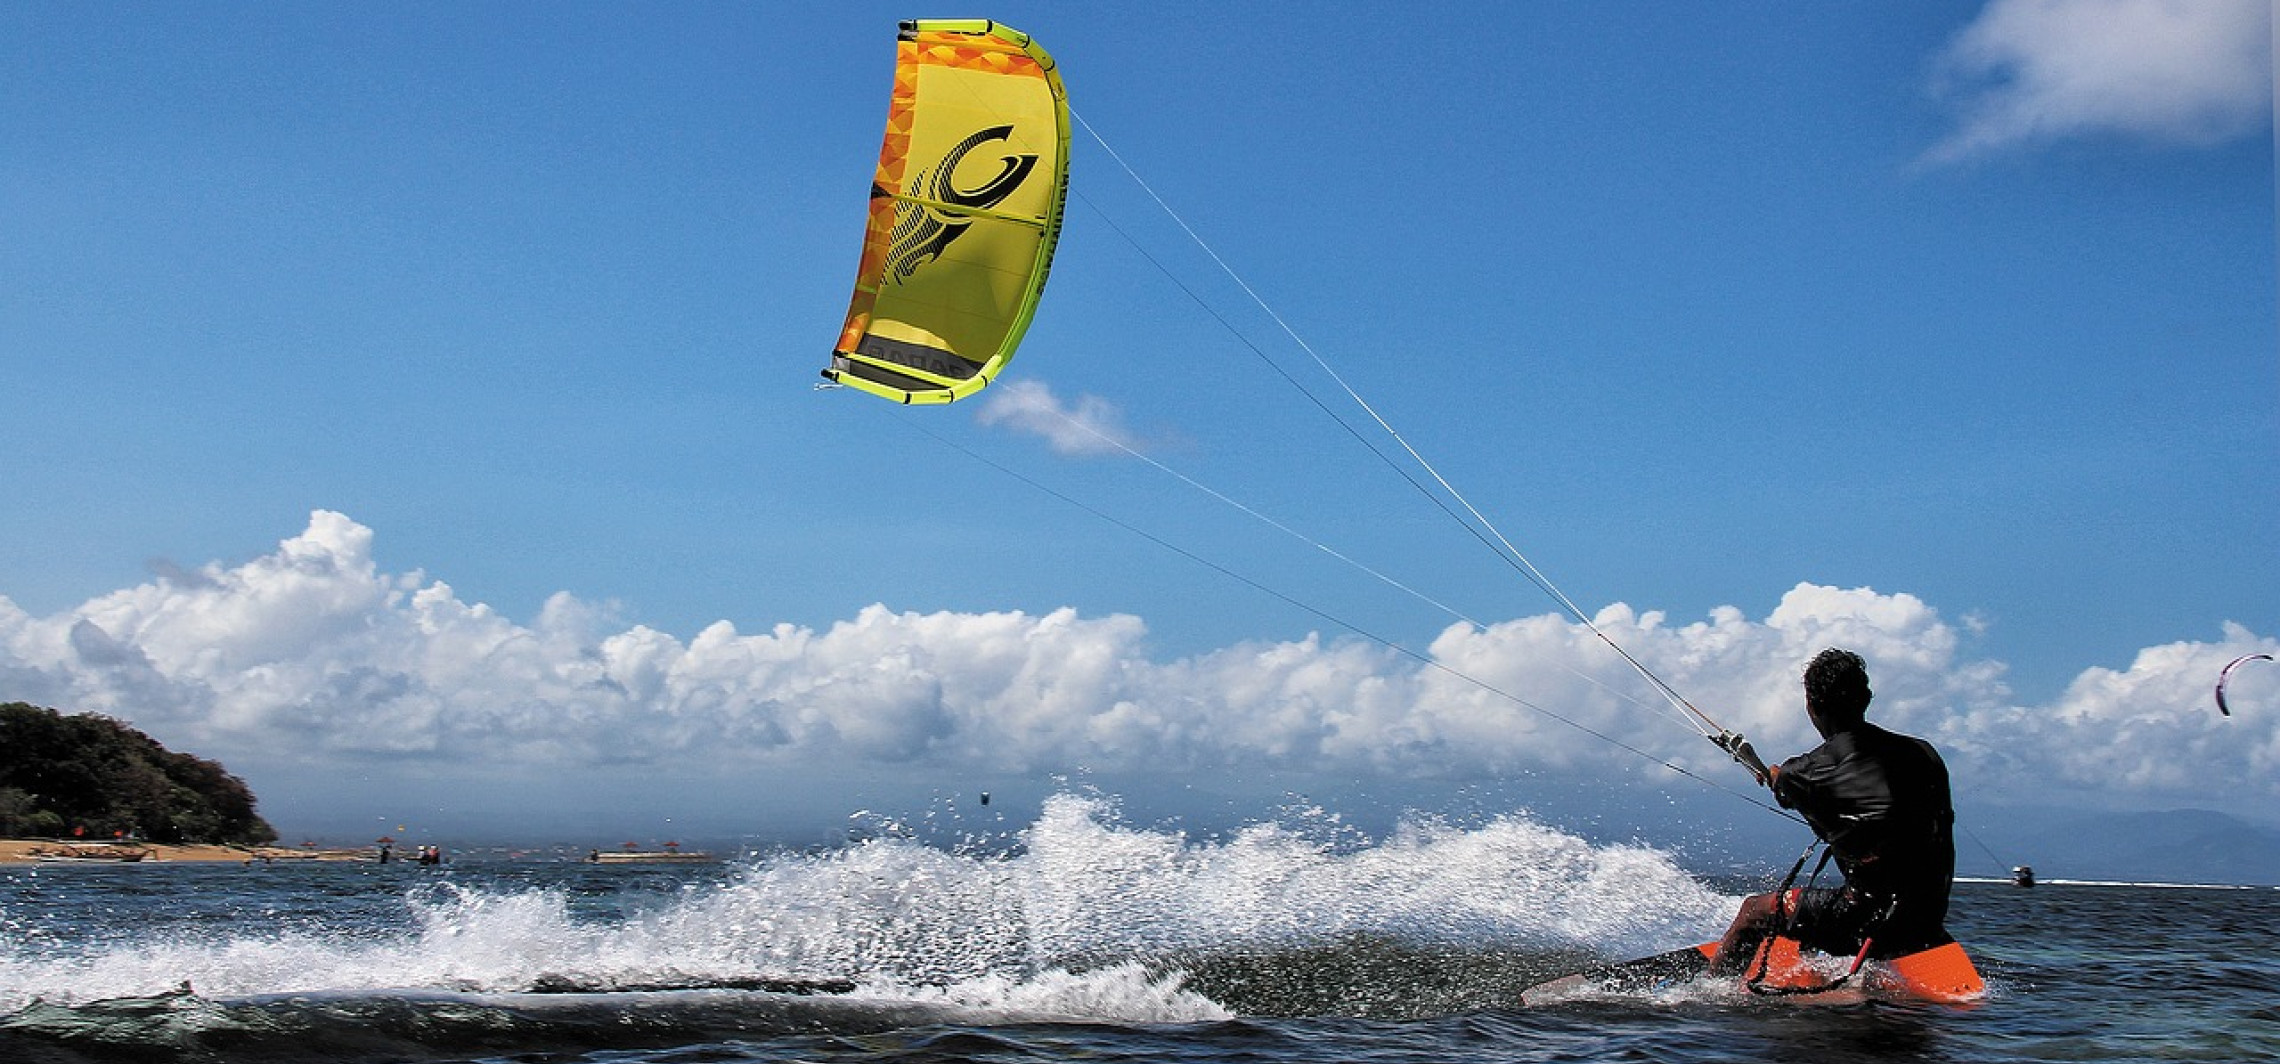 Region - Co jest lepsze: kitesurfing czy windsurfing?